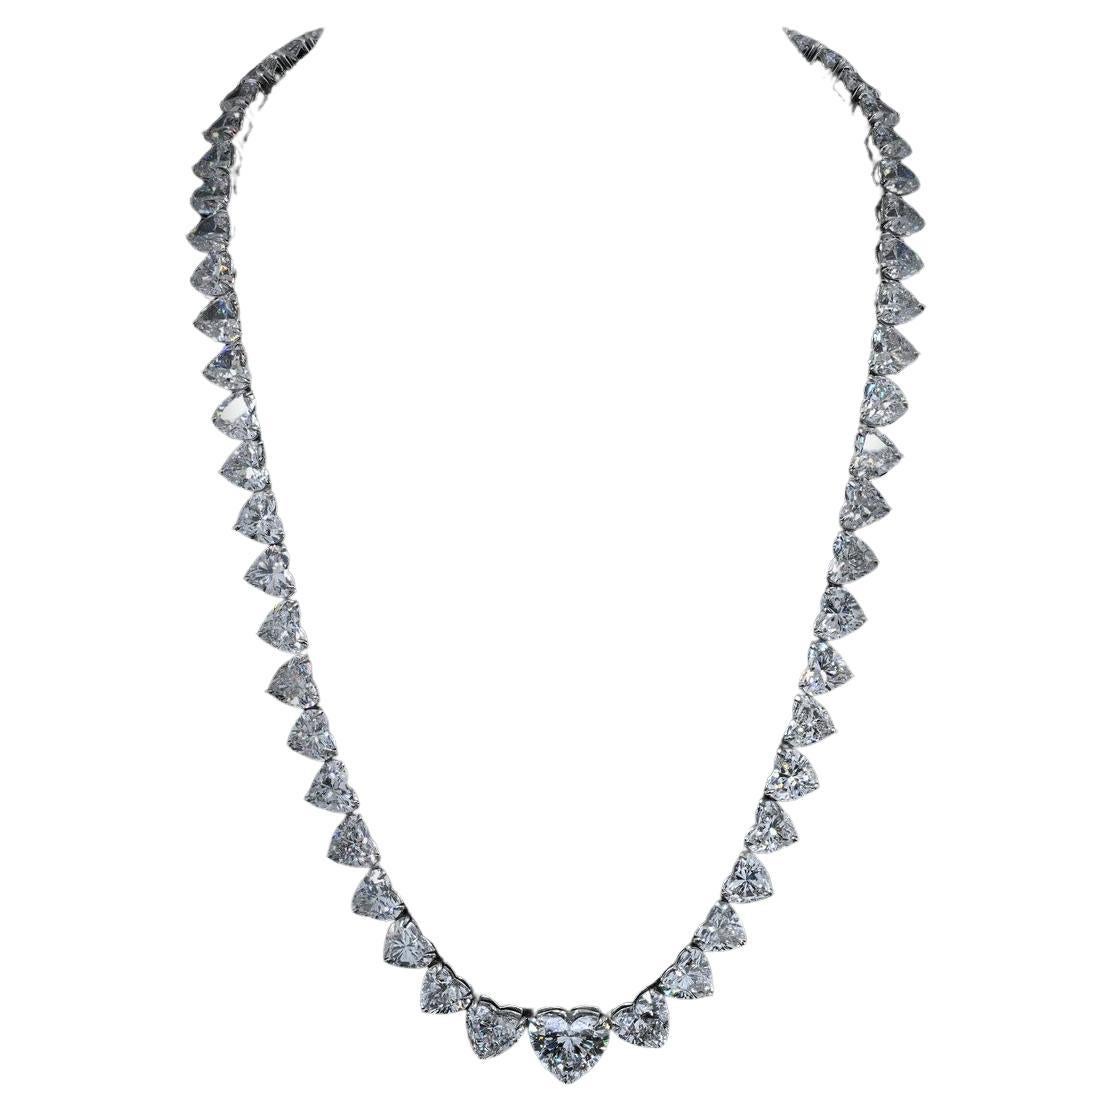 Wir präsentieren unsere exquisite 56-karätige Riviera-Halskette in Herzform, die mit natürlich zertifizierten GIA-Diamanten in atemberaubender D/F-Farbe geschmückt ist. Erhöhen Sie Ihren Stil mit diesem zeitlosen Meisterwerk - ein Symbol für Eleganz